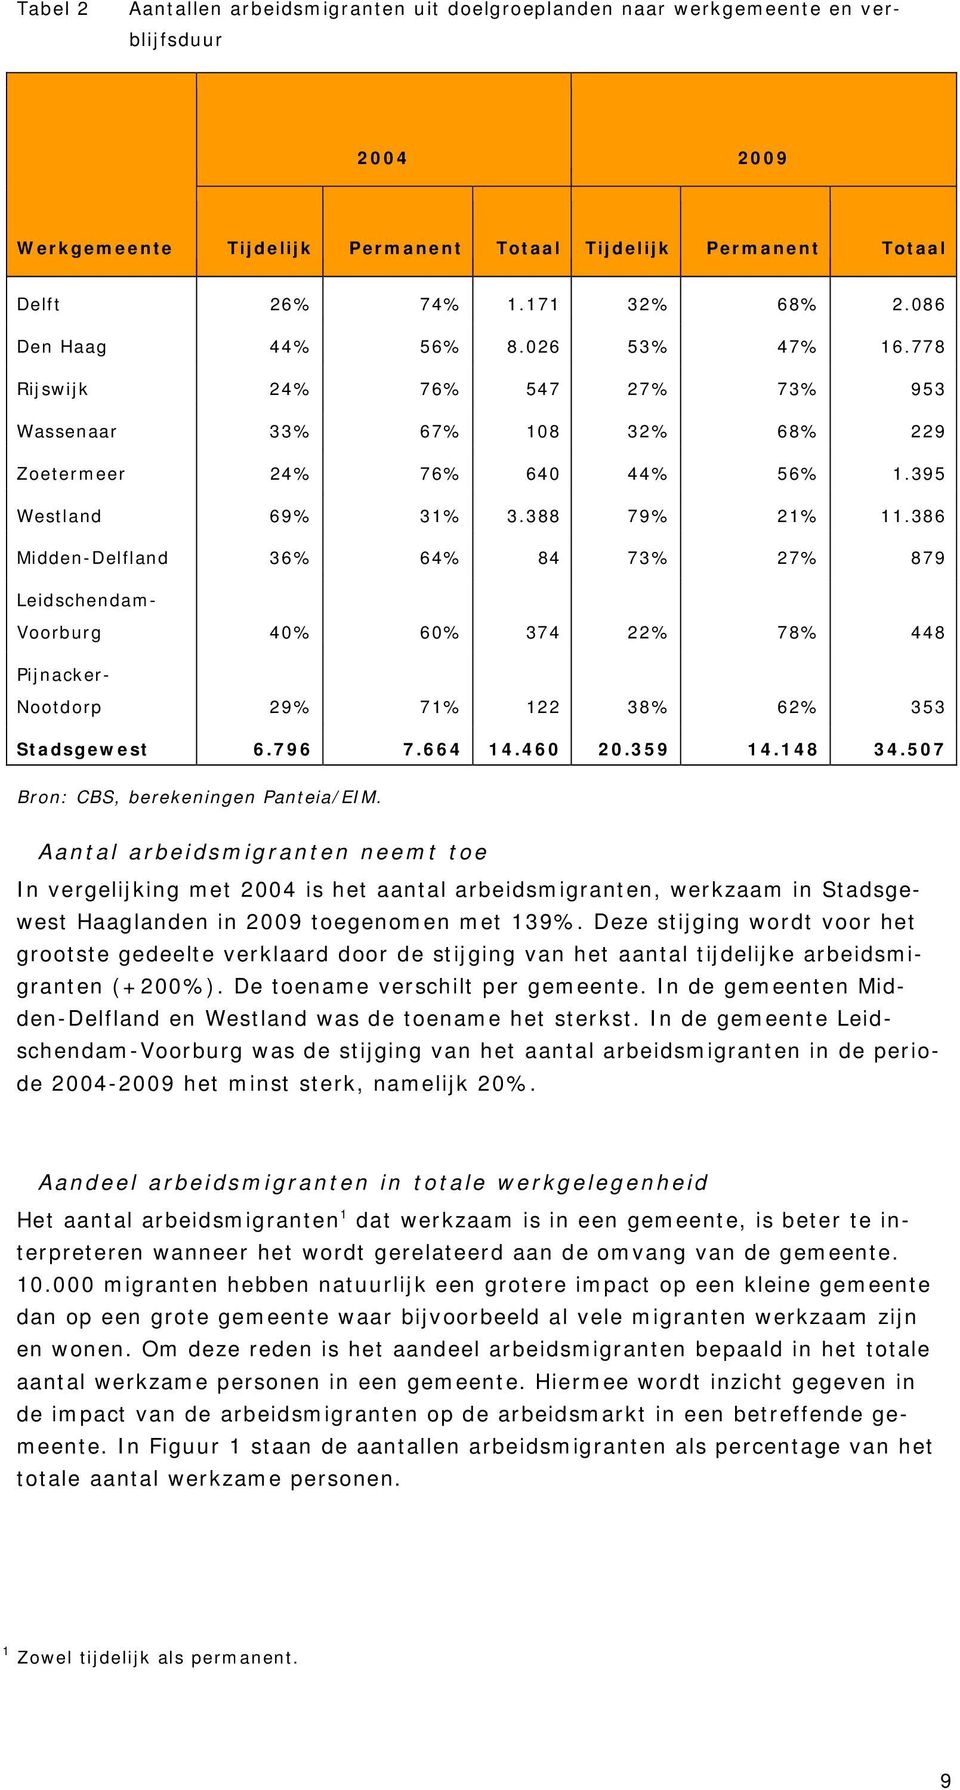 386 Midden-Delfland 36% 64% 84 73% 27% 879 Leidschendam- Voorburg 40% 60% 374 22% 78% 448 Pijnacker- Nootdorp 29% 71% 122 38% 62% 353 Stadsgewest 6.796 7.664 14.460 20.359 14.148 34.